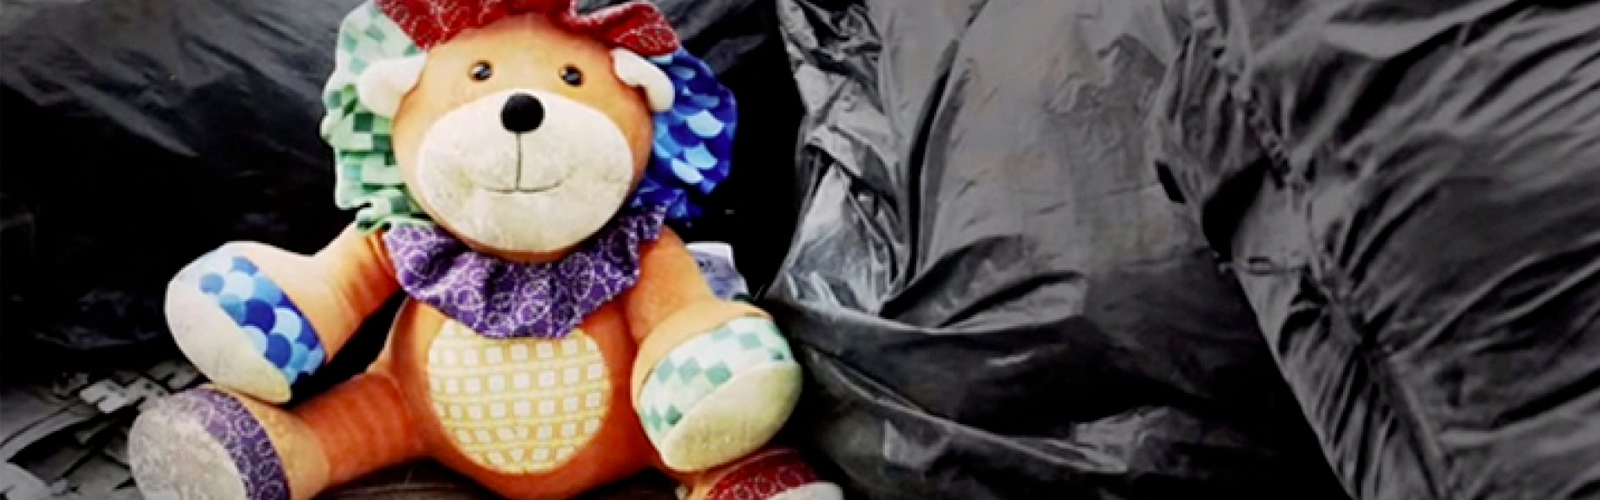 urso de pelúcia sobre sacos de lixo pretos simbolizando trabalho infantil